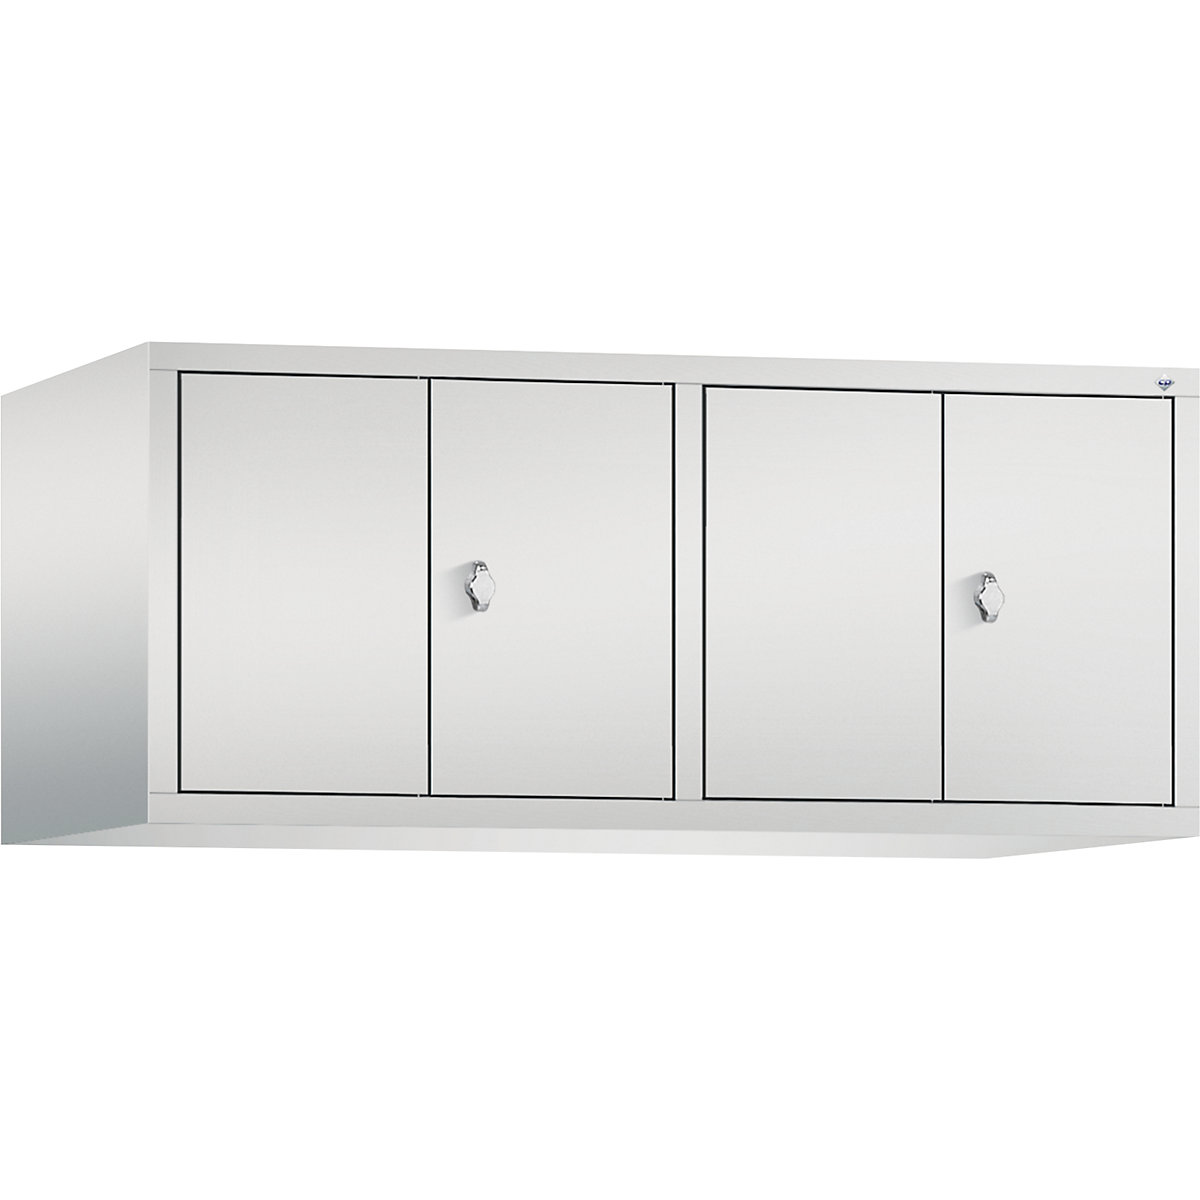 C+P – Altillo CLASSIC, puertas batientes que cierran al ras entre sí, 4 compartimentos, anchura de compartimento 300 mm, gris luminoso